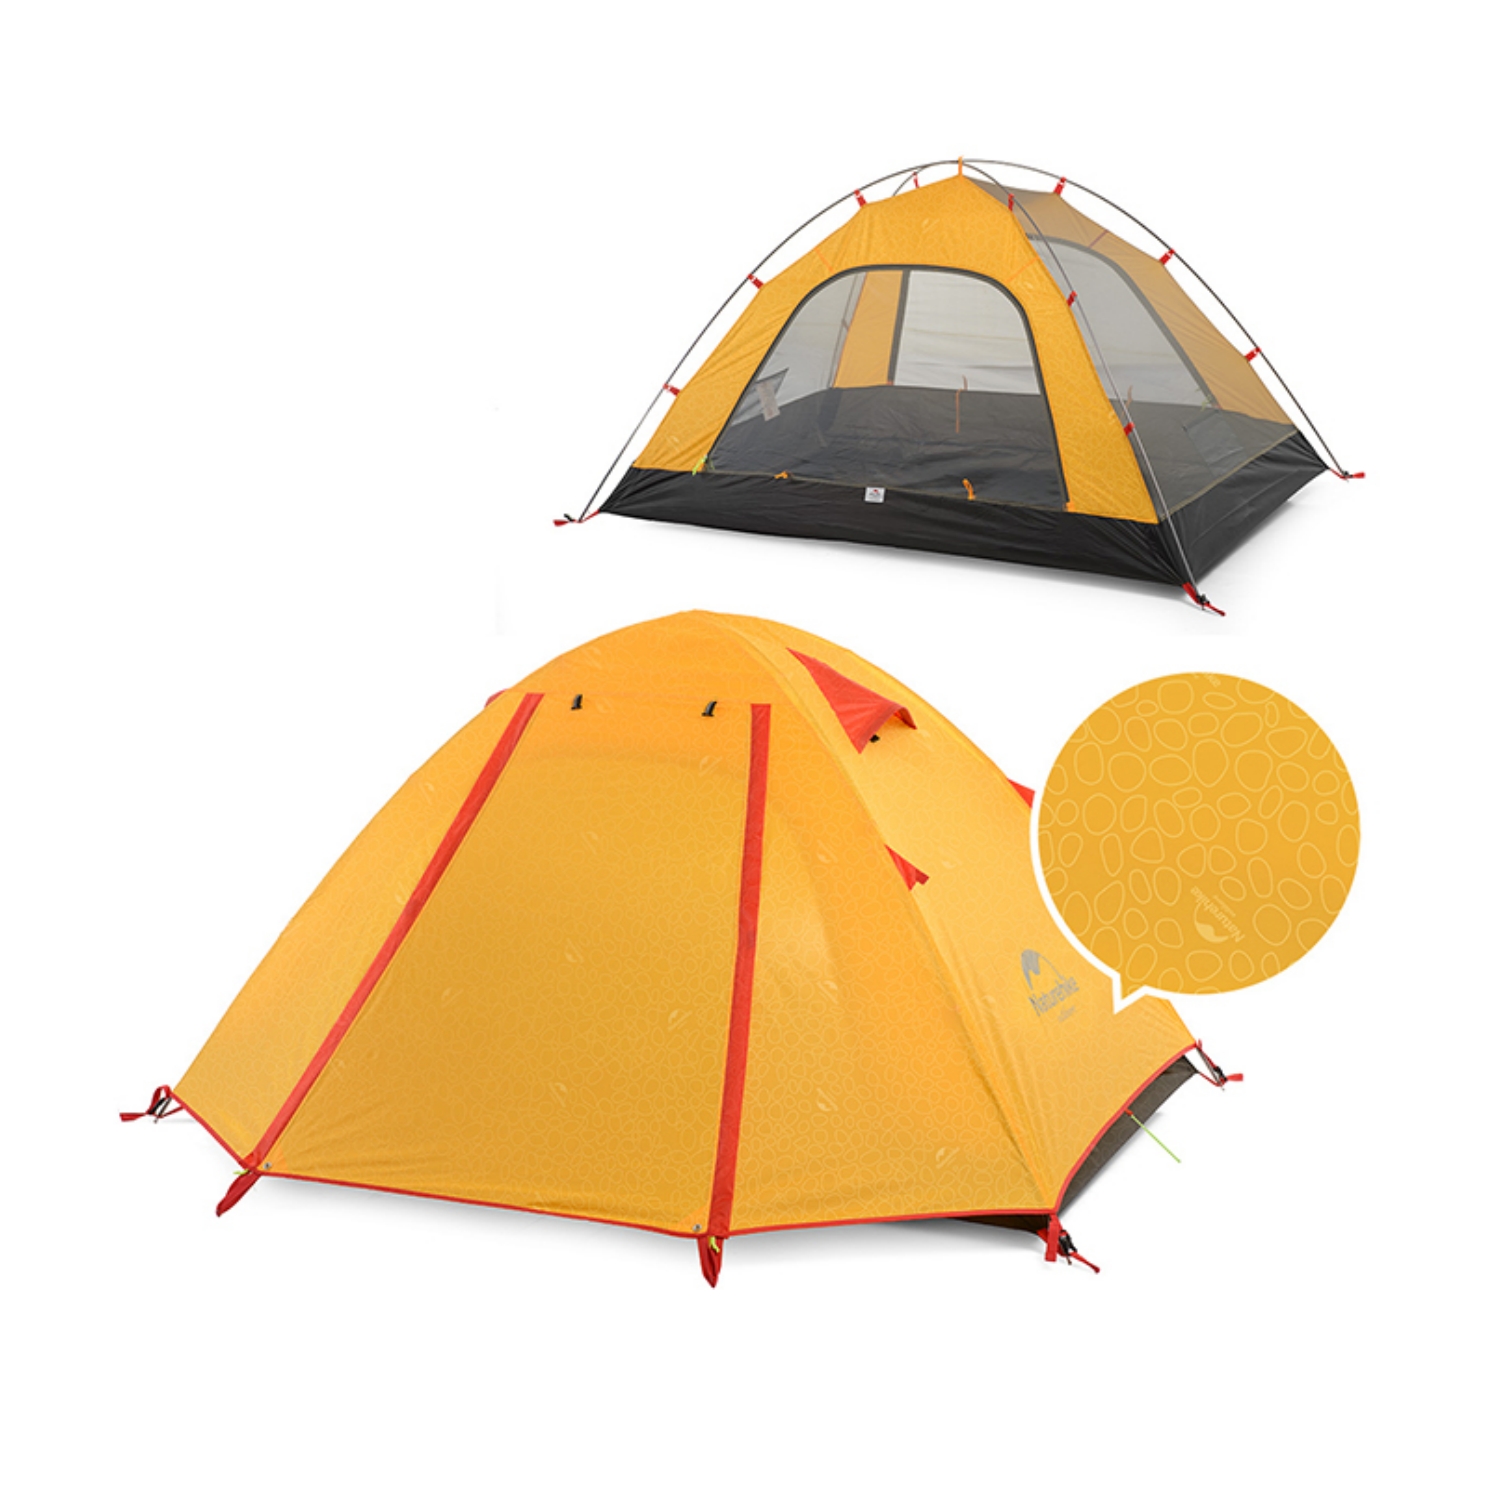 Naturehike Pキャンプ2人用テントドームテント 2~4人用 UPF50+ 耐水圧2000mm+ 二重層 設営簡単 コンパクト